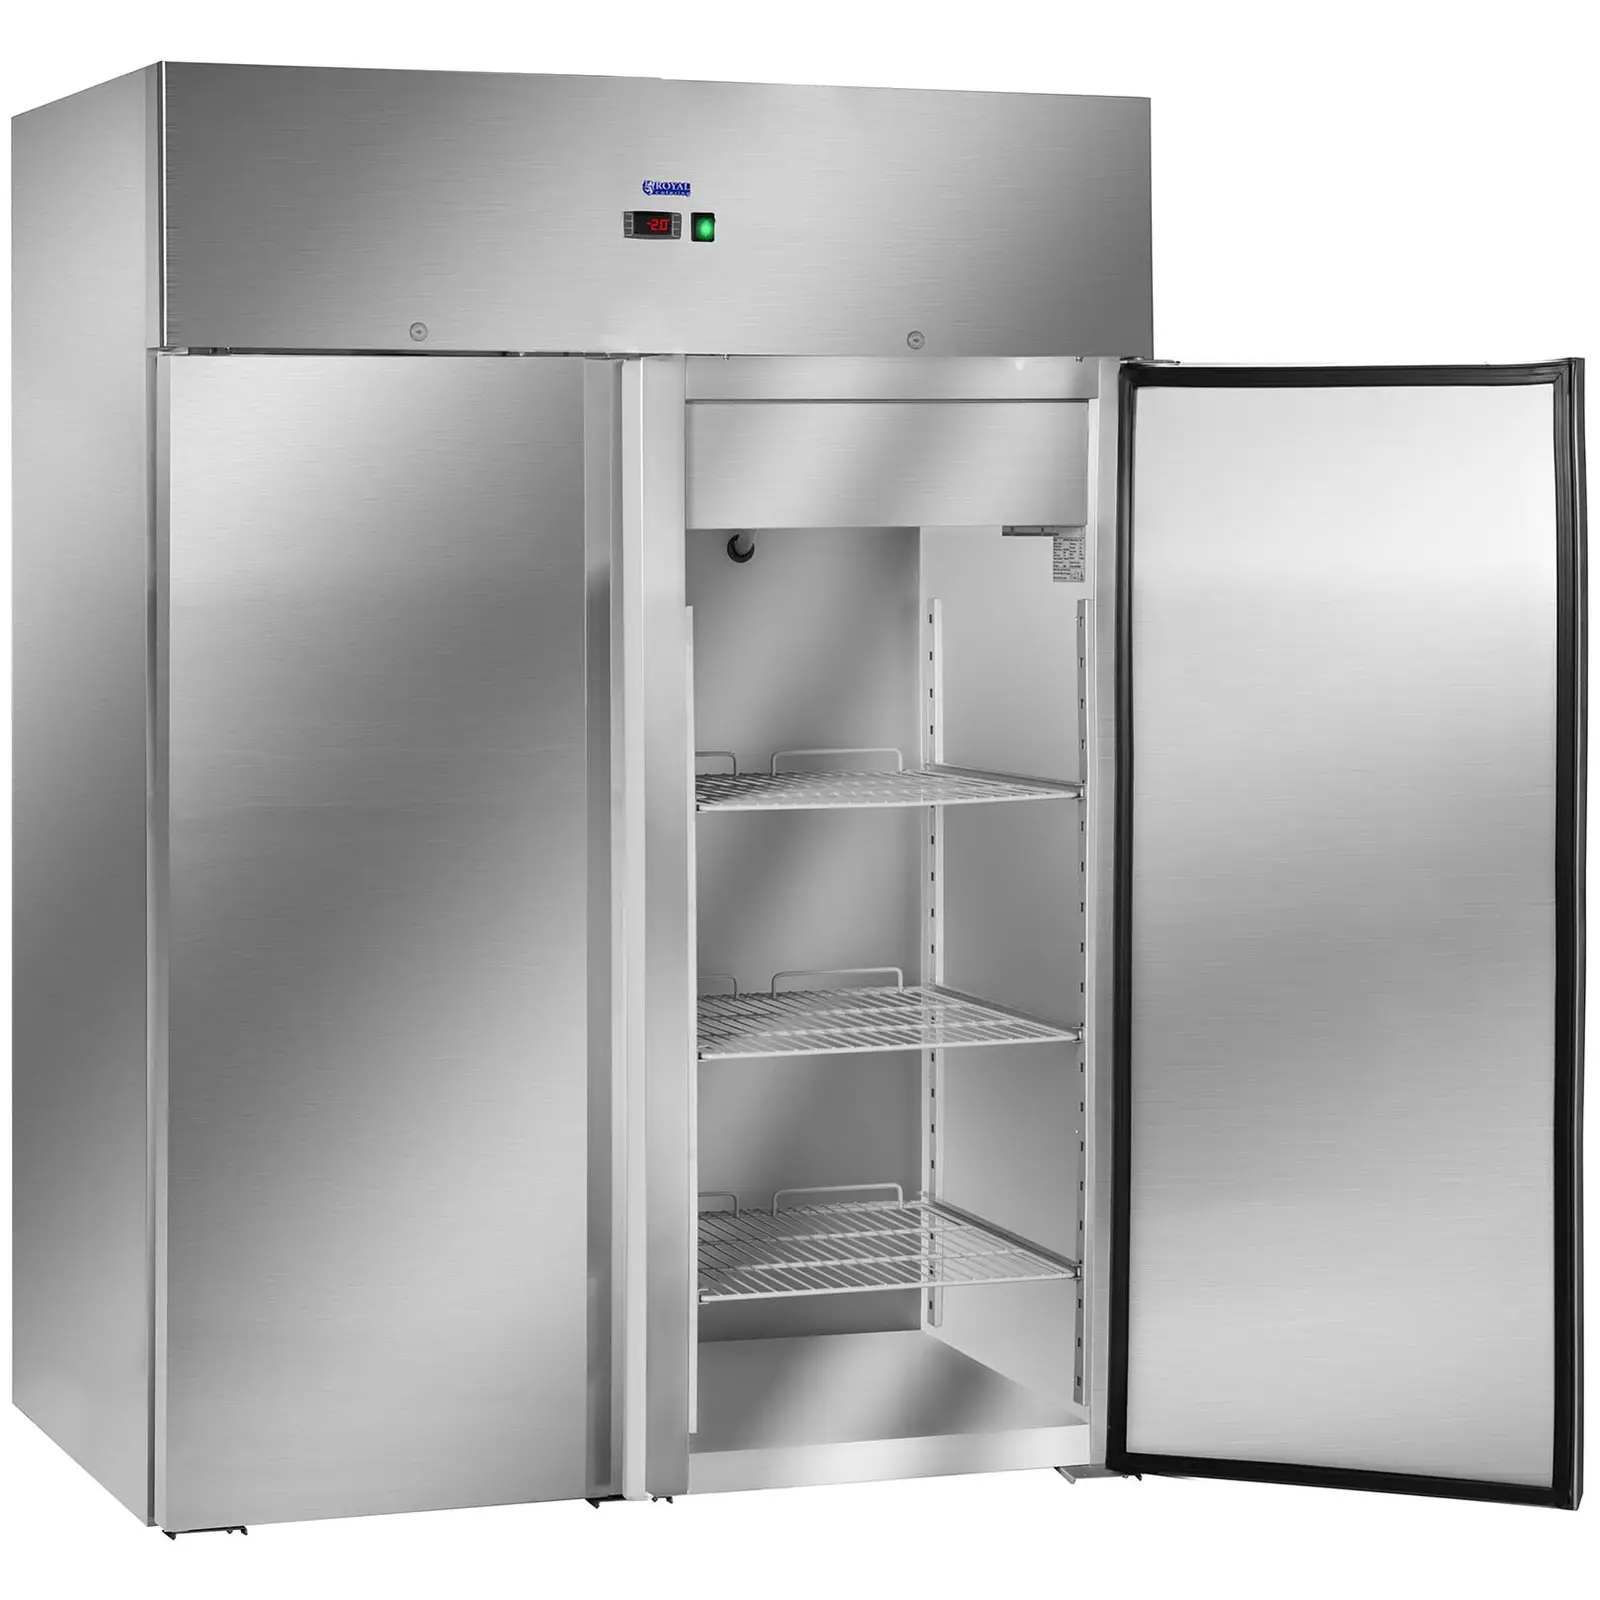 Gastro chladnička se dvěma dveřmi - 1 168 l